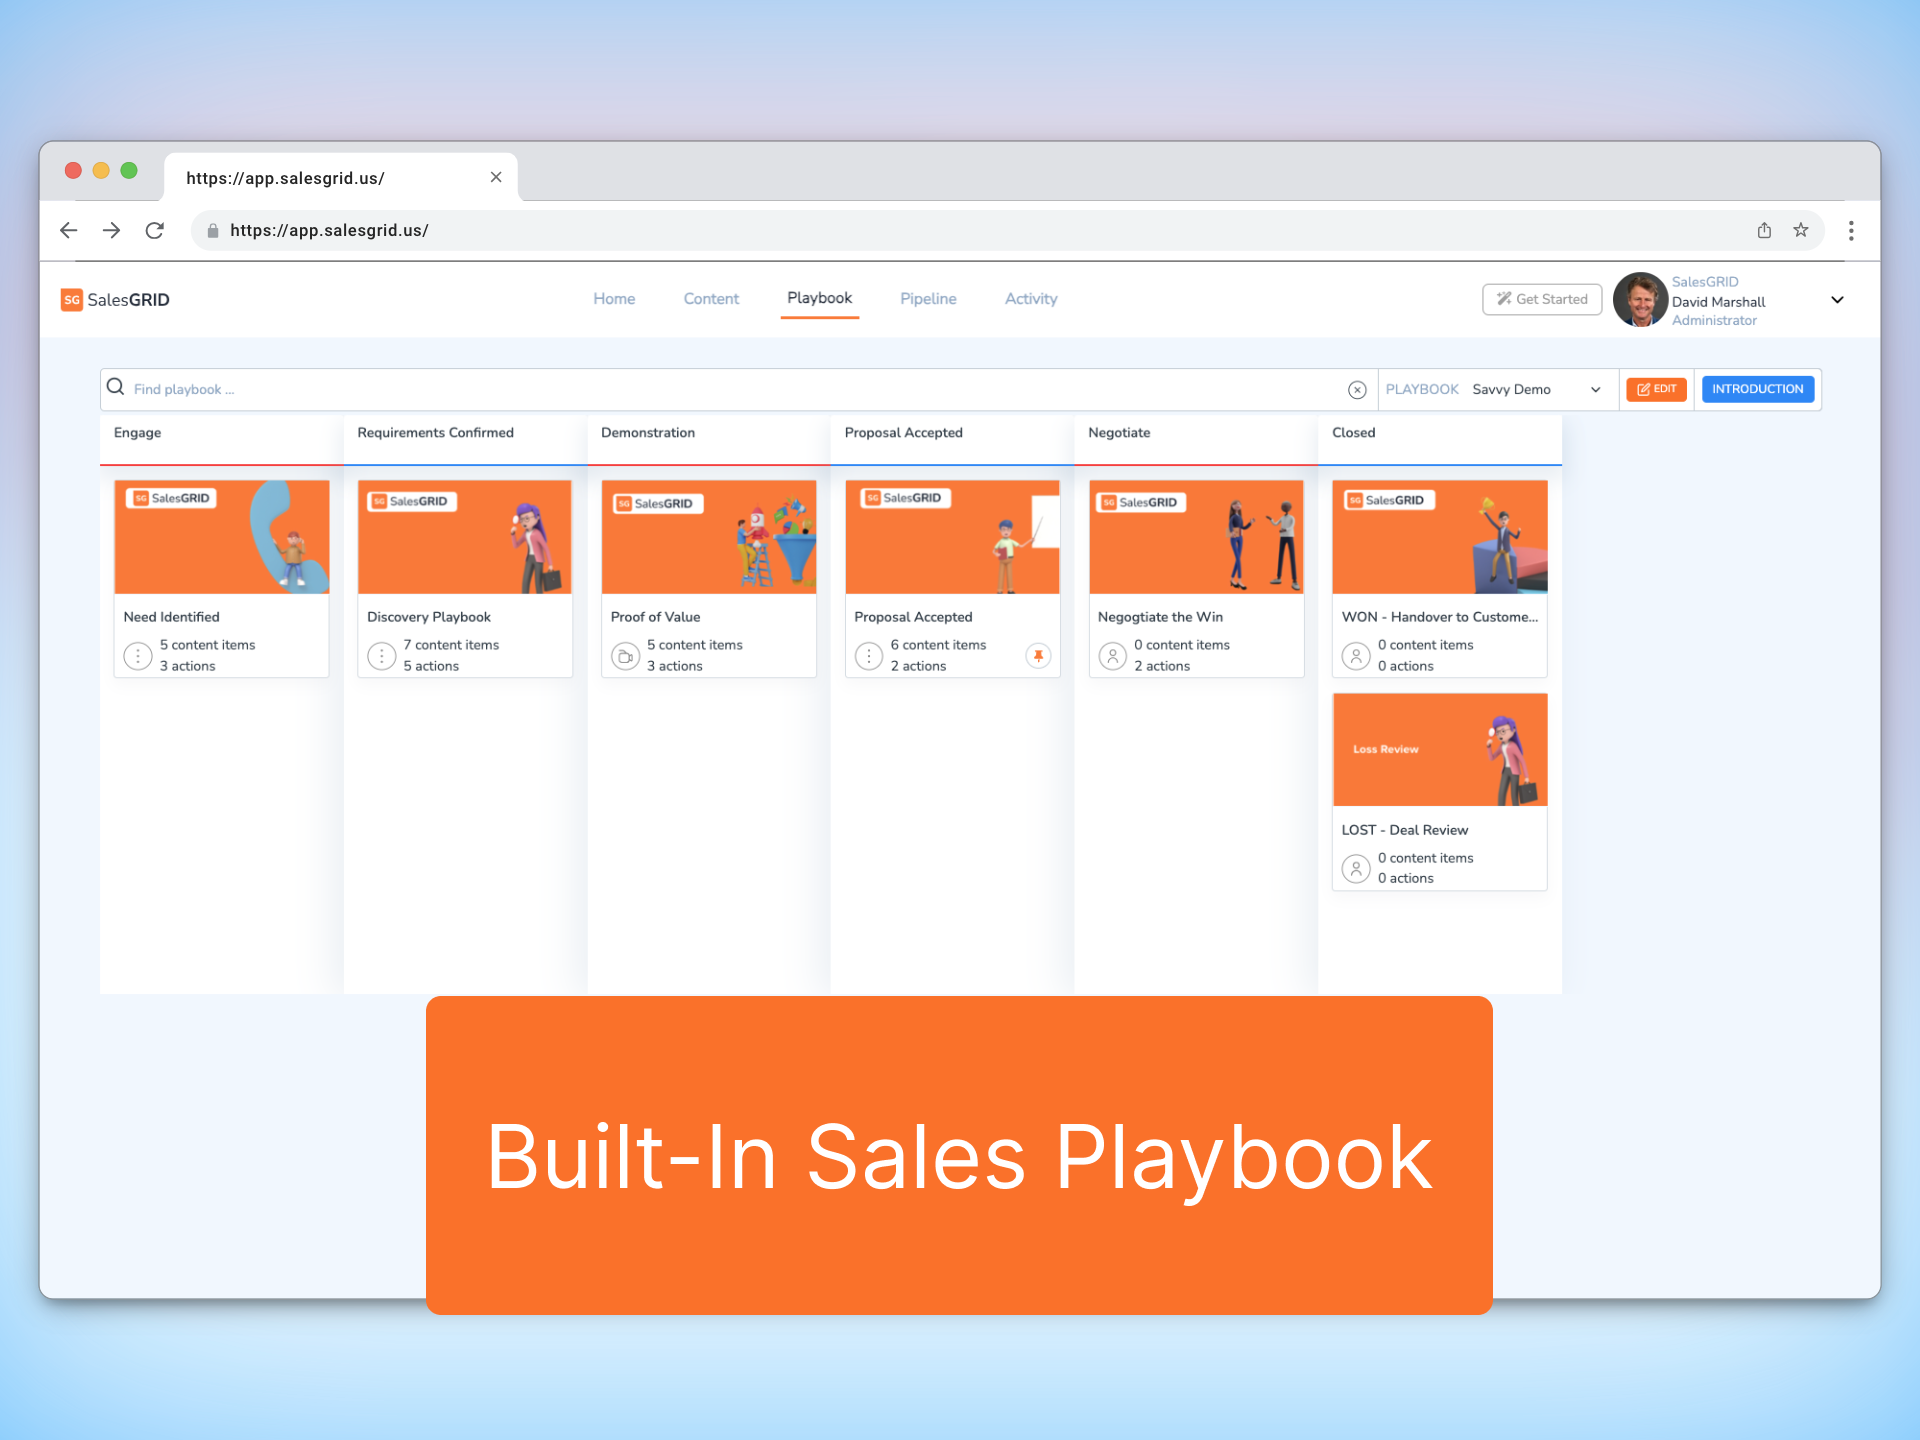 Built-In Sales Playbook